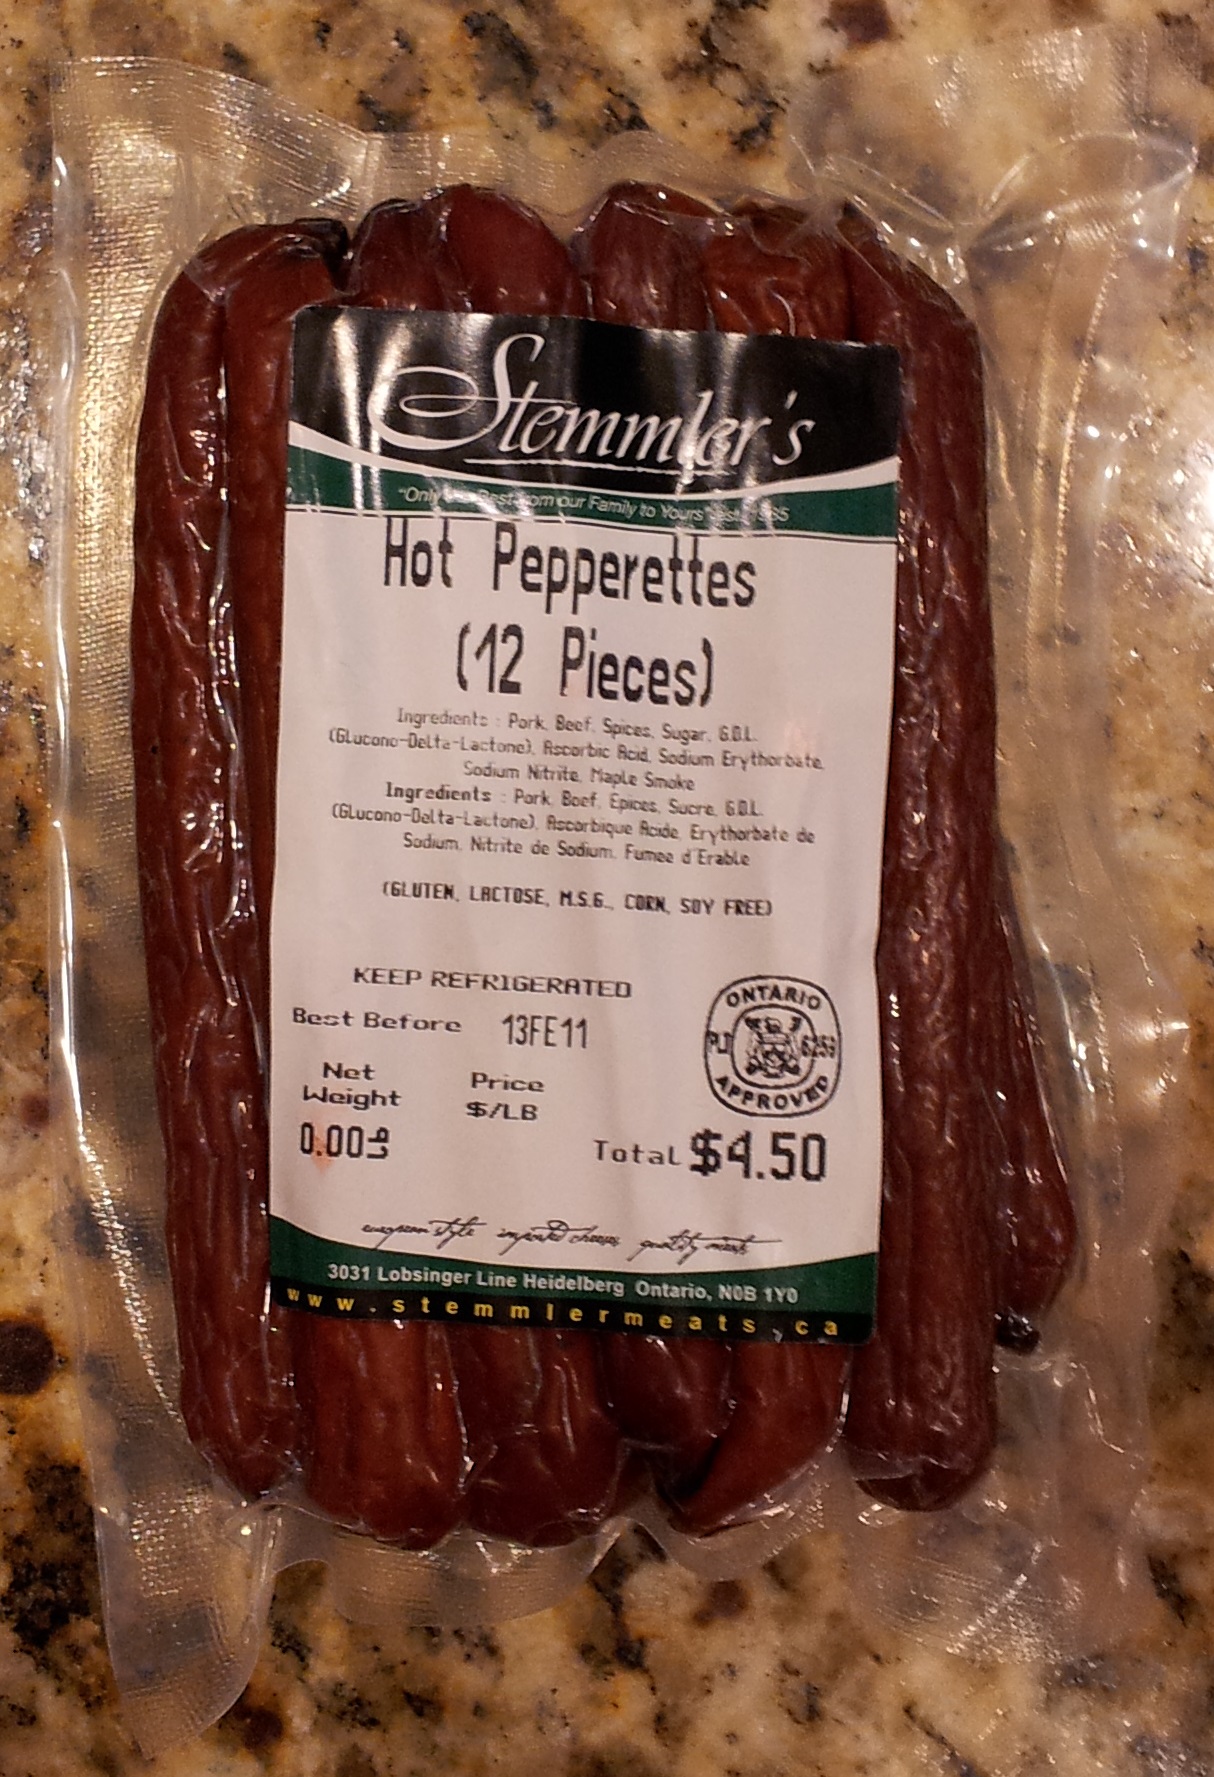 Stemmler's Hot Pepperettes